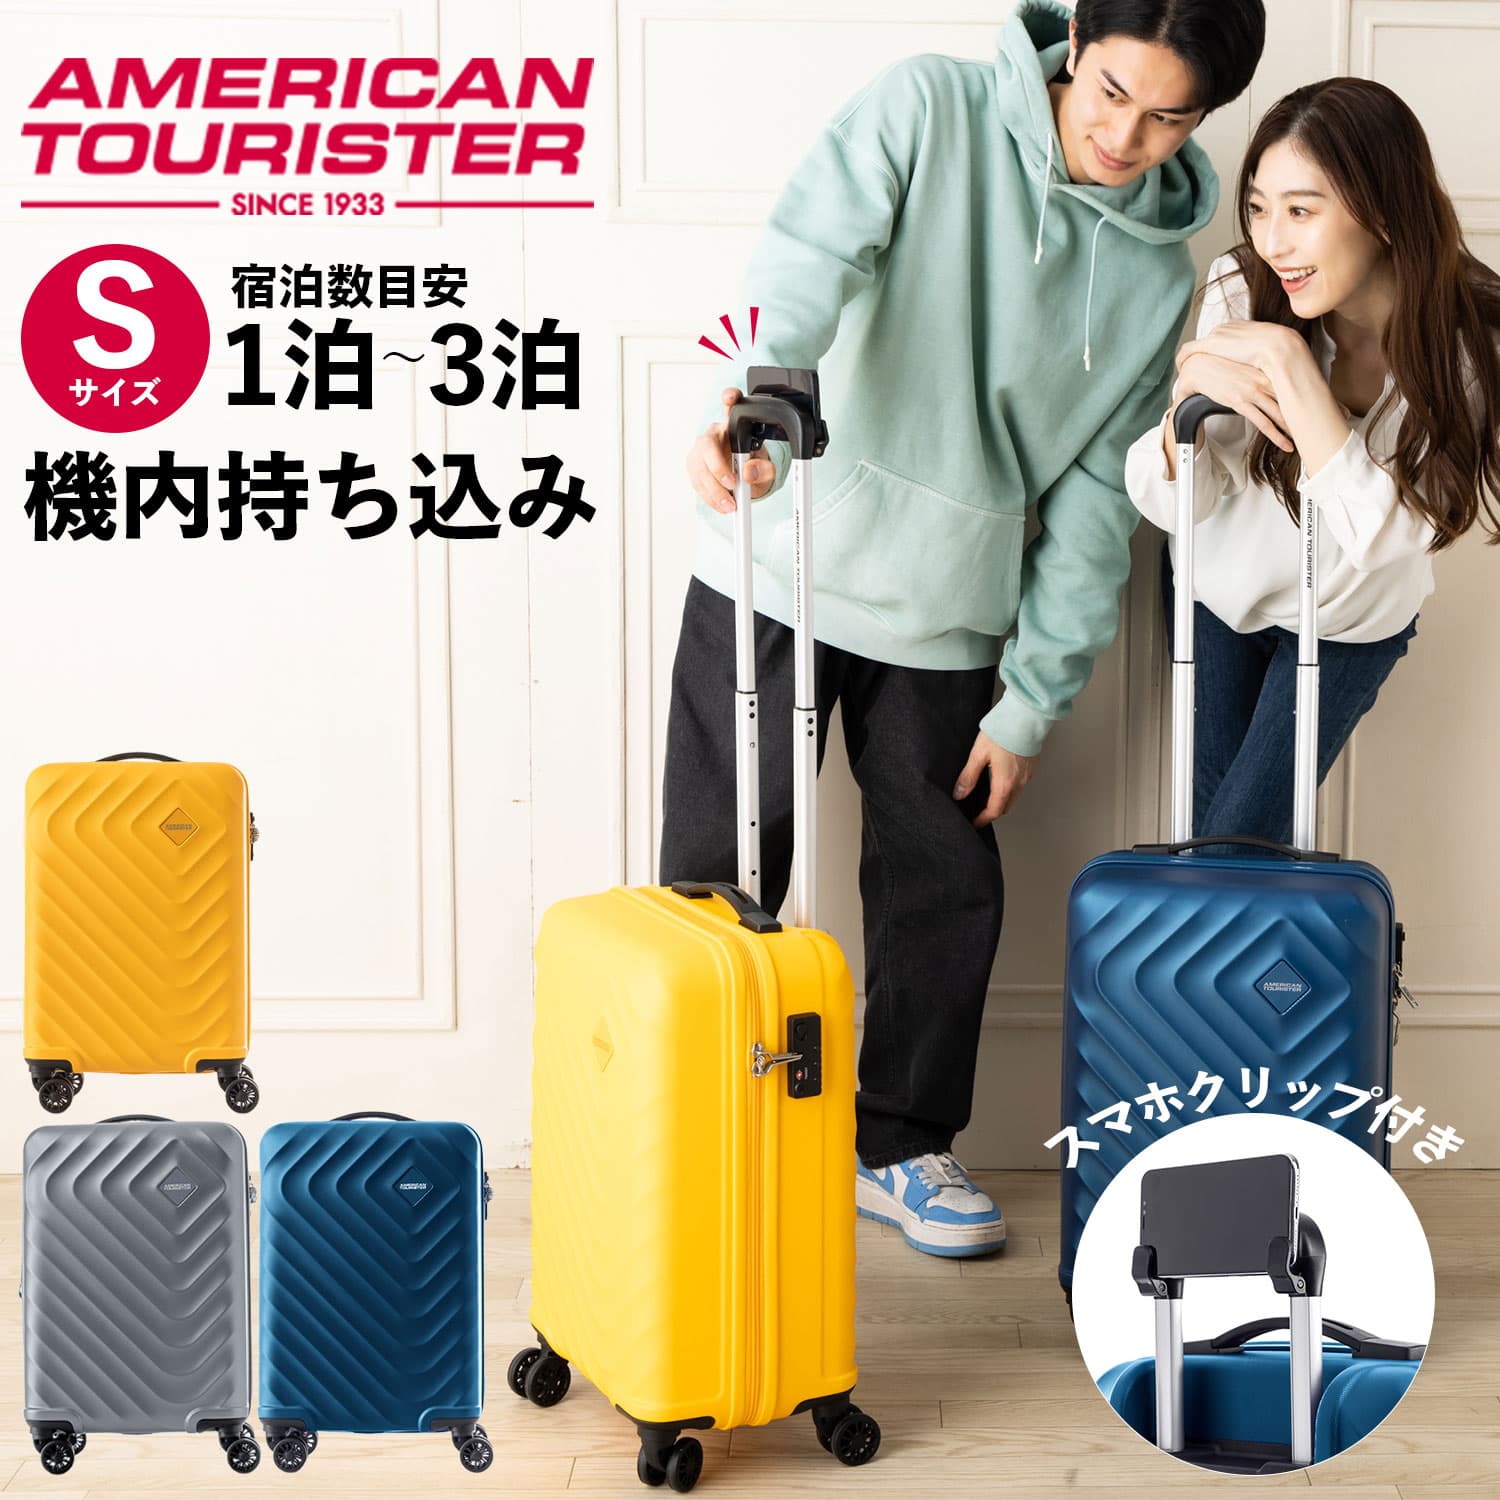  стандартный товар american two li Star чемодан машина внутри принесенный S размер дорожная сумка Carry кейс твердый мужской женский модный бренд Samsonite 